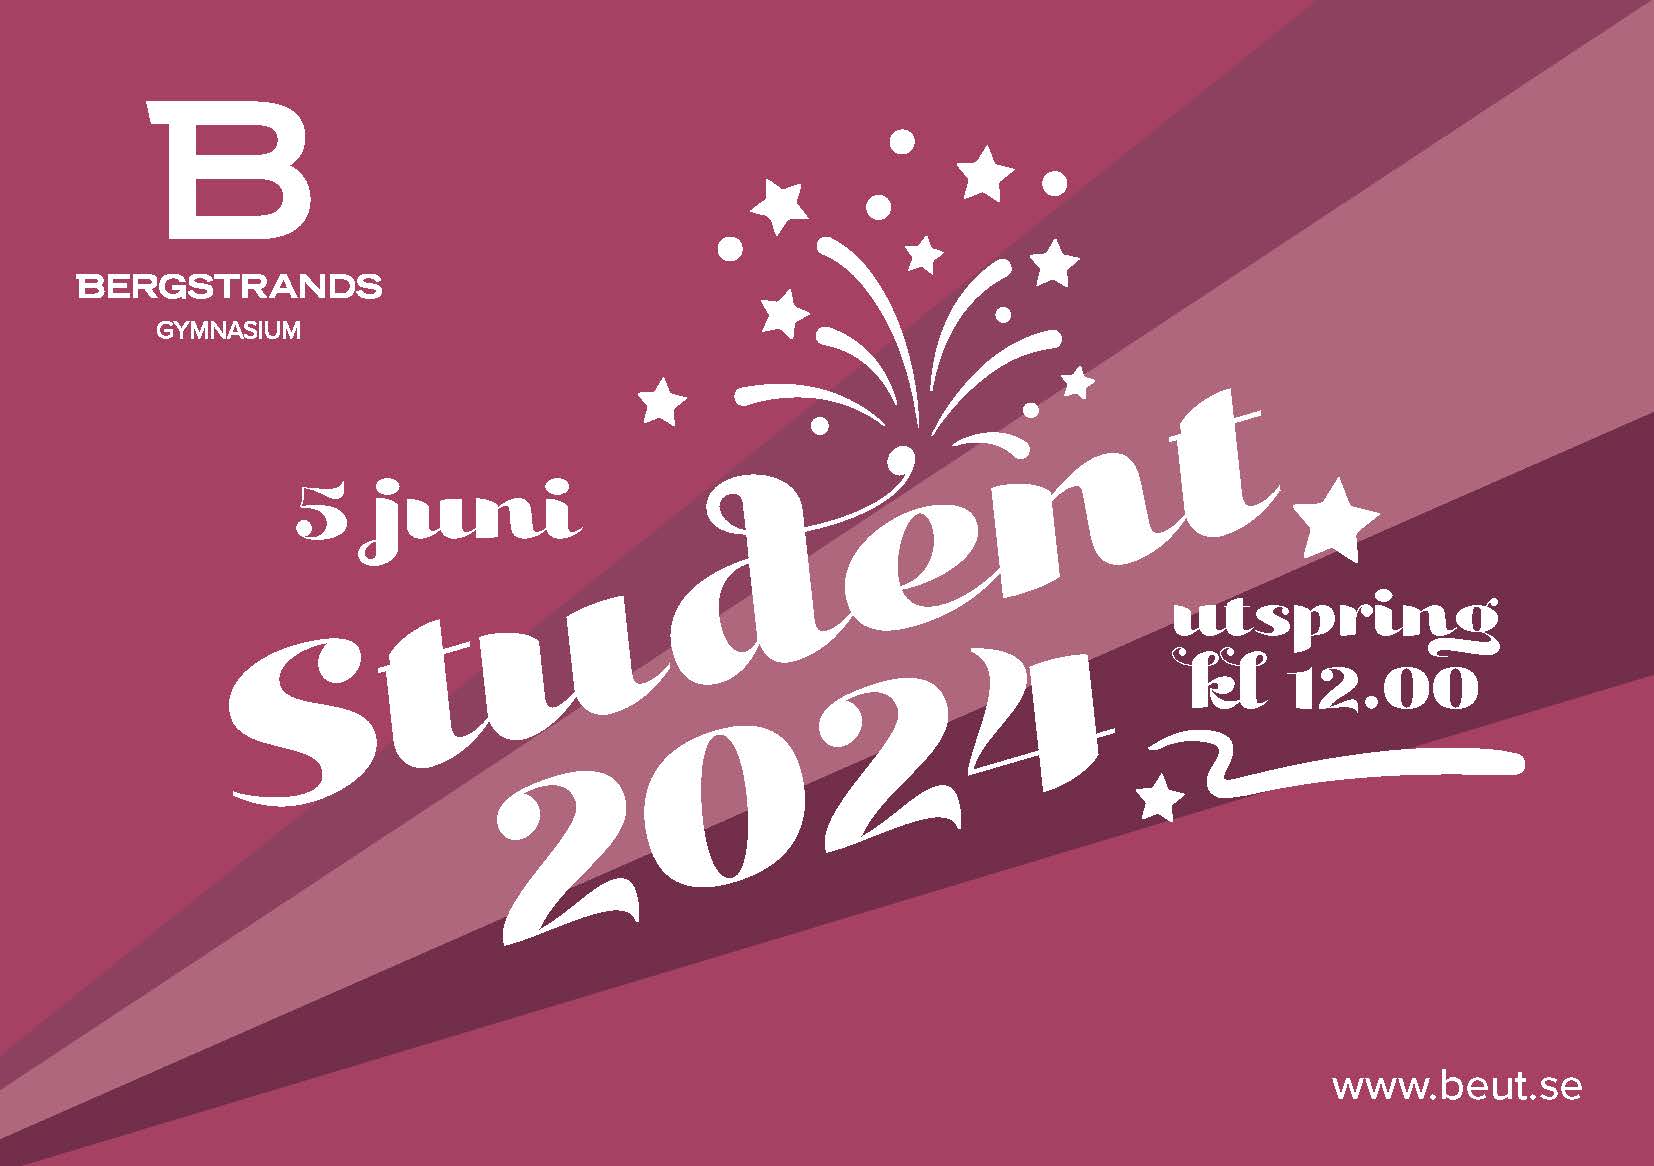 Grafik av ett examensmeddelande för Bergstrands gymnasium, med datumet 5 juni 2024, med fyrverkeridesign i vitt på vinröd bakgrund.